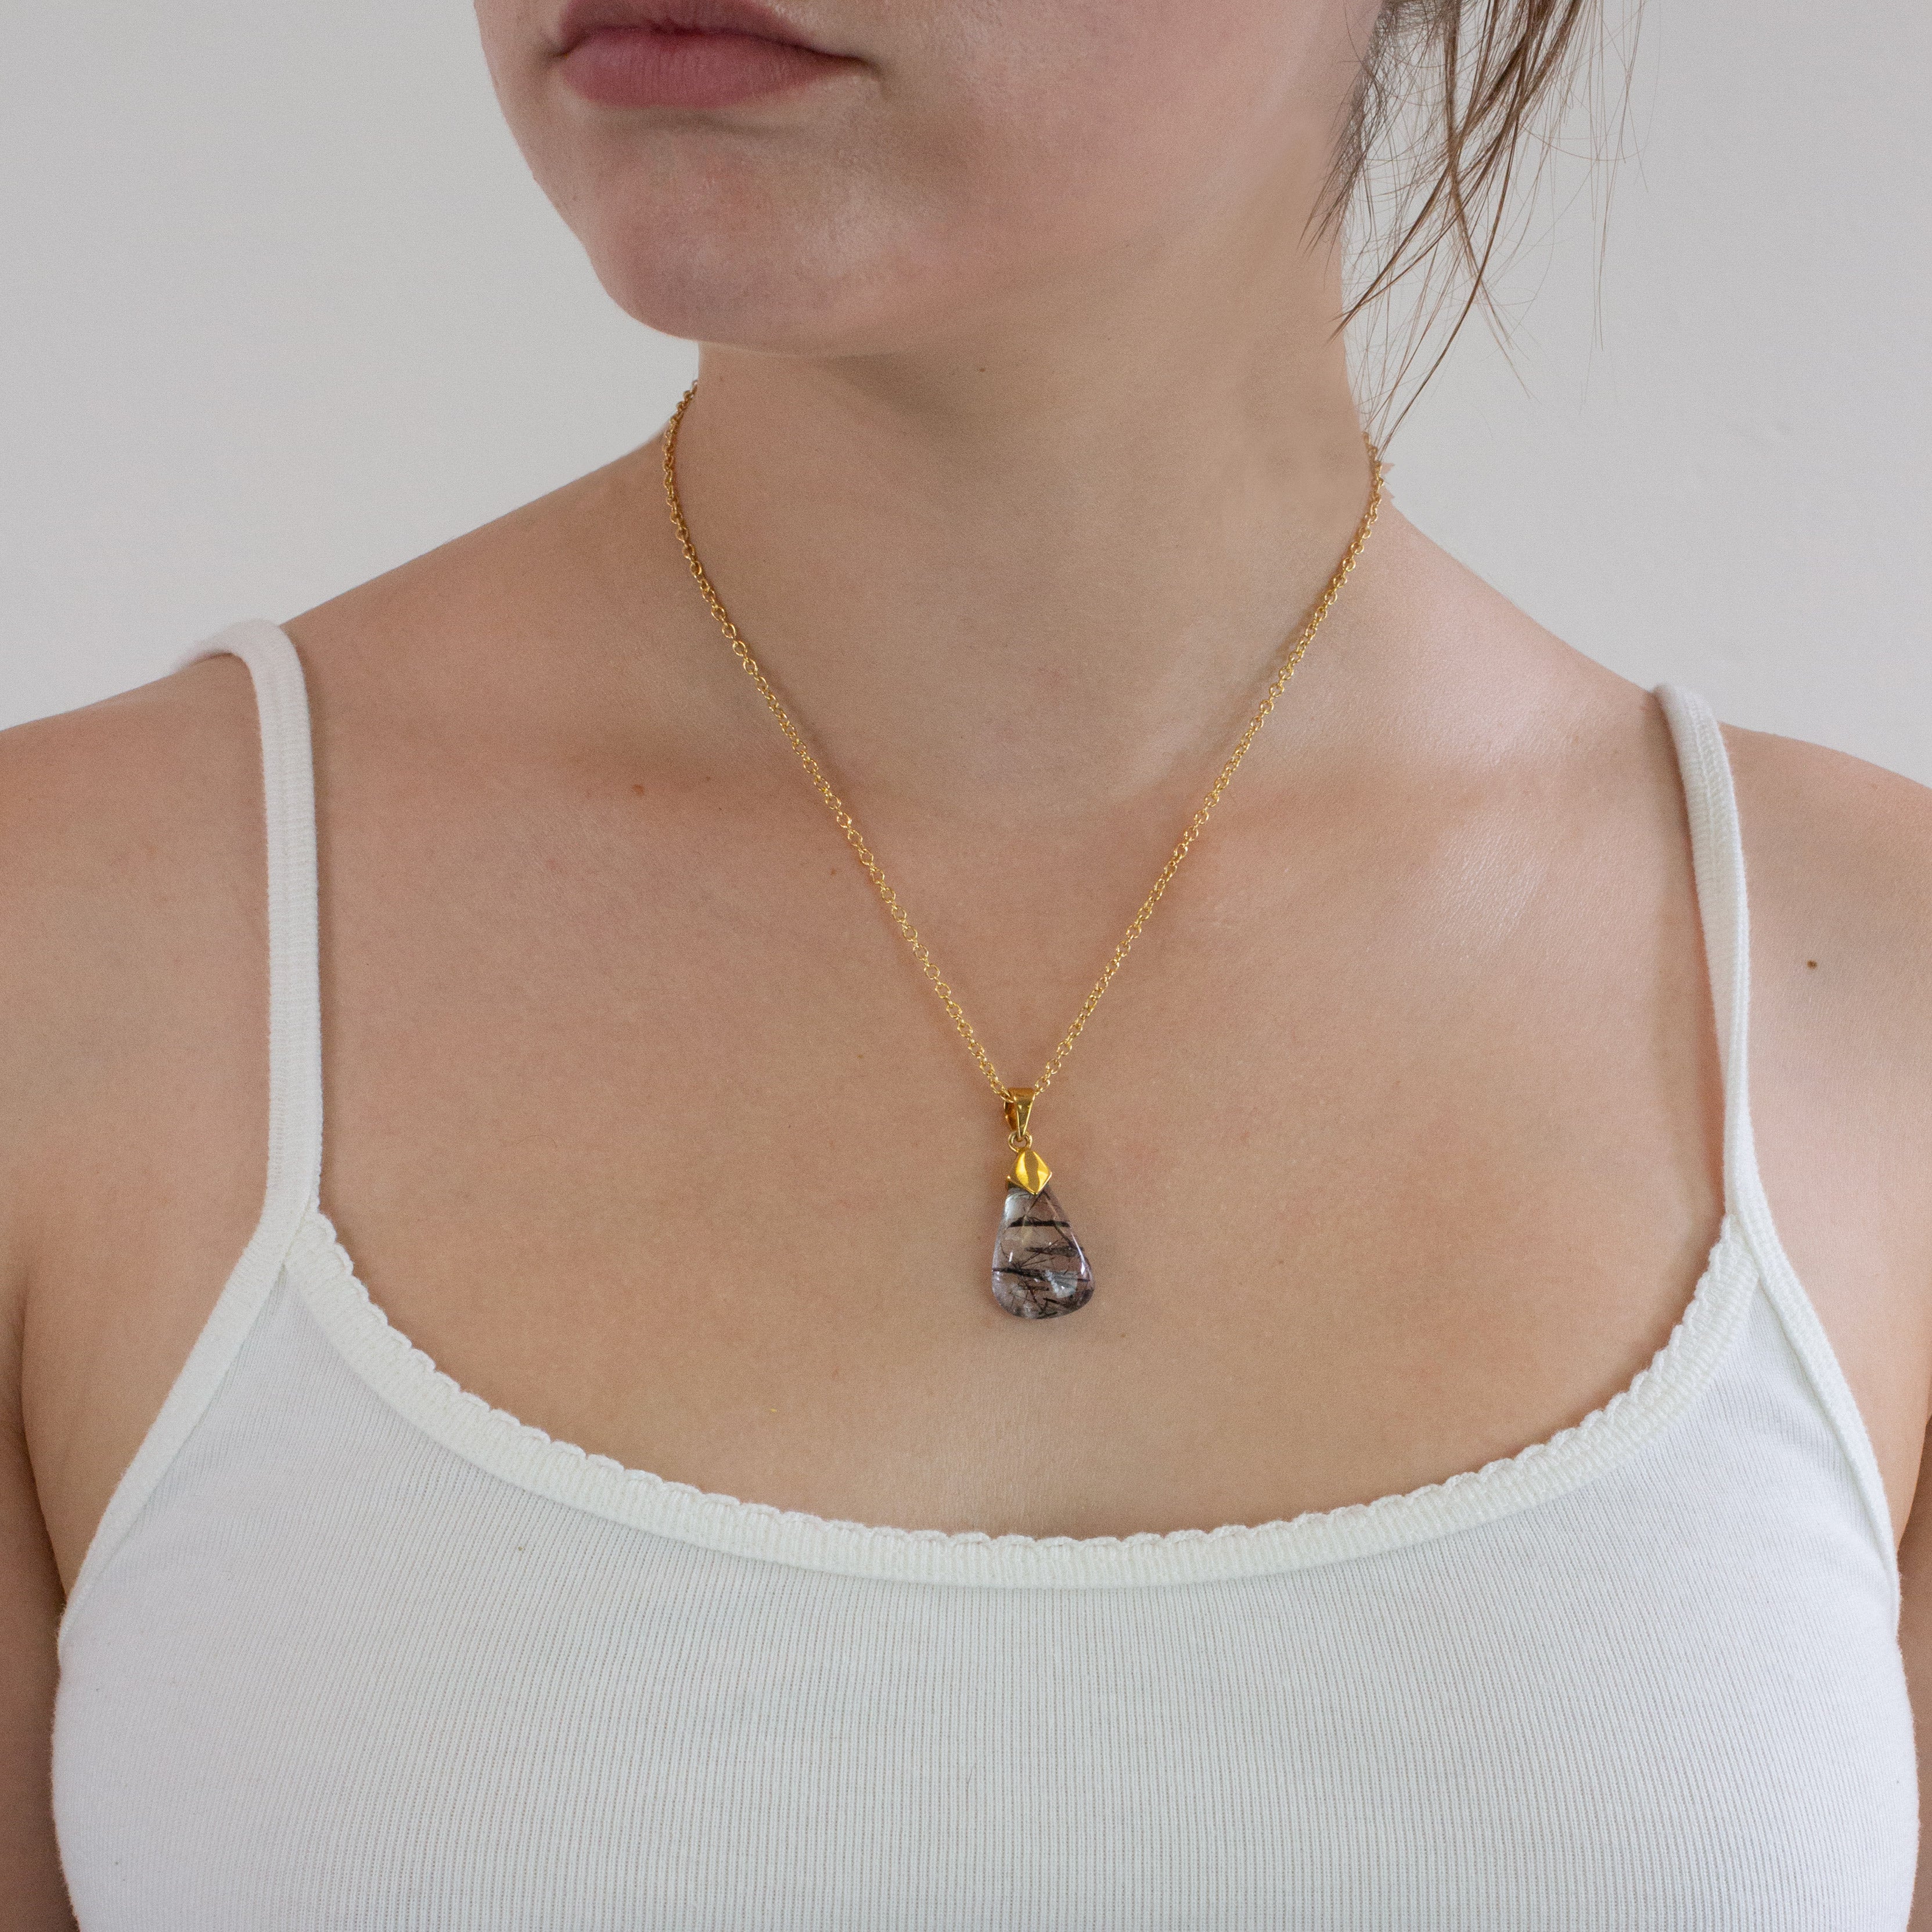 Tourmalinated Quartz necklace on model